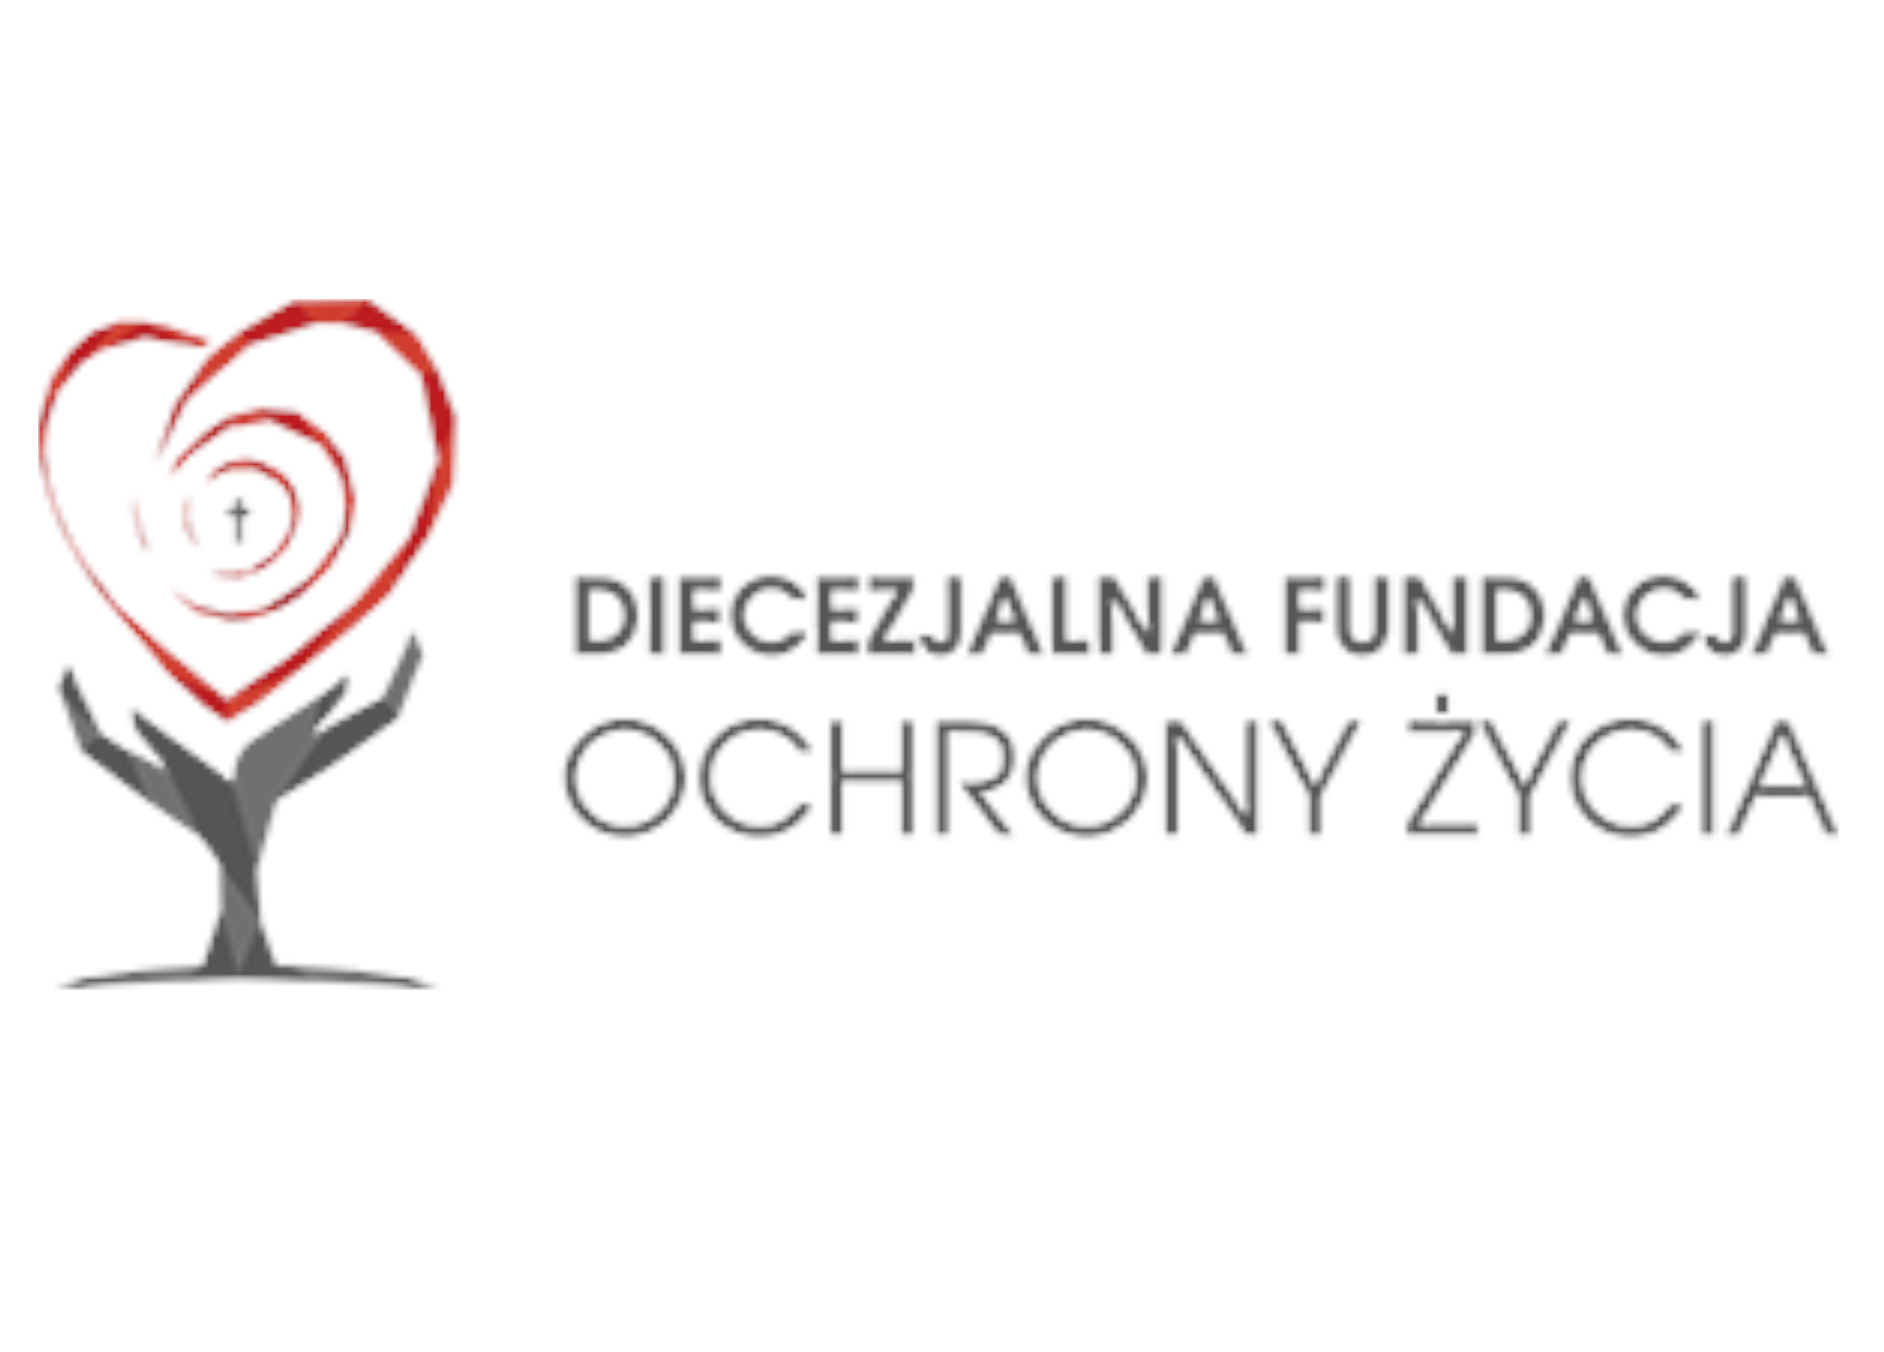 Diecezjalna Fundacja Ochrony Życia w Opolu kontynuuje realizację projektu Opolskie Ośrodki Pomocy Pokrzywdzonym Przestępstwem, sfinansowanego ze środków Funduszu Sprawiedliwości